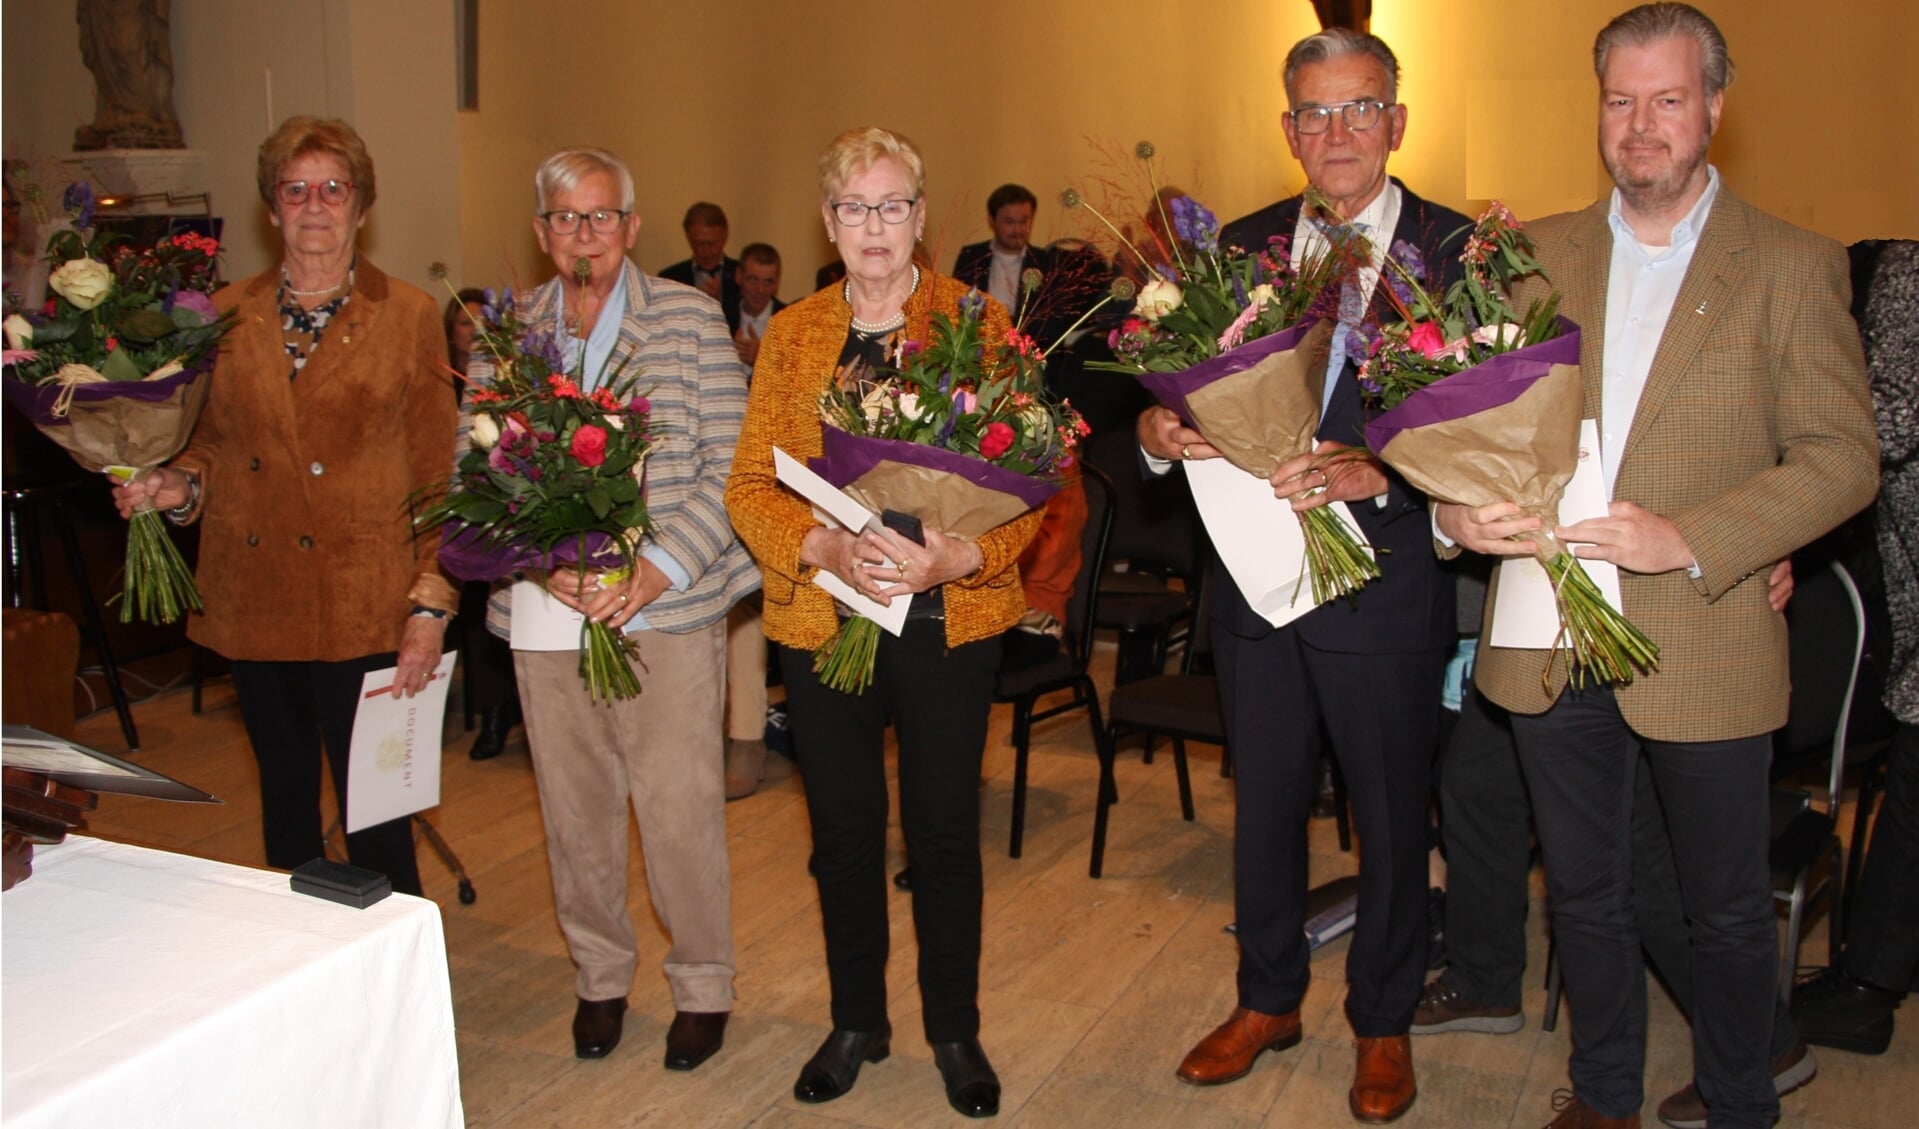 De dames Spekreijse, Wagemans, Kottink en de heren Roeloffzen en Northausen.